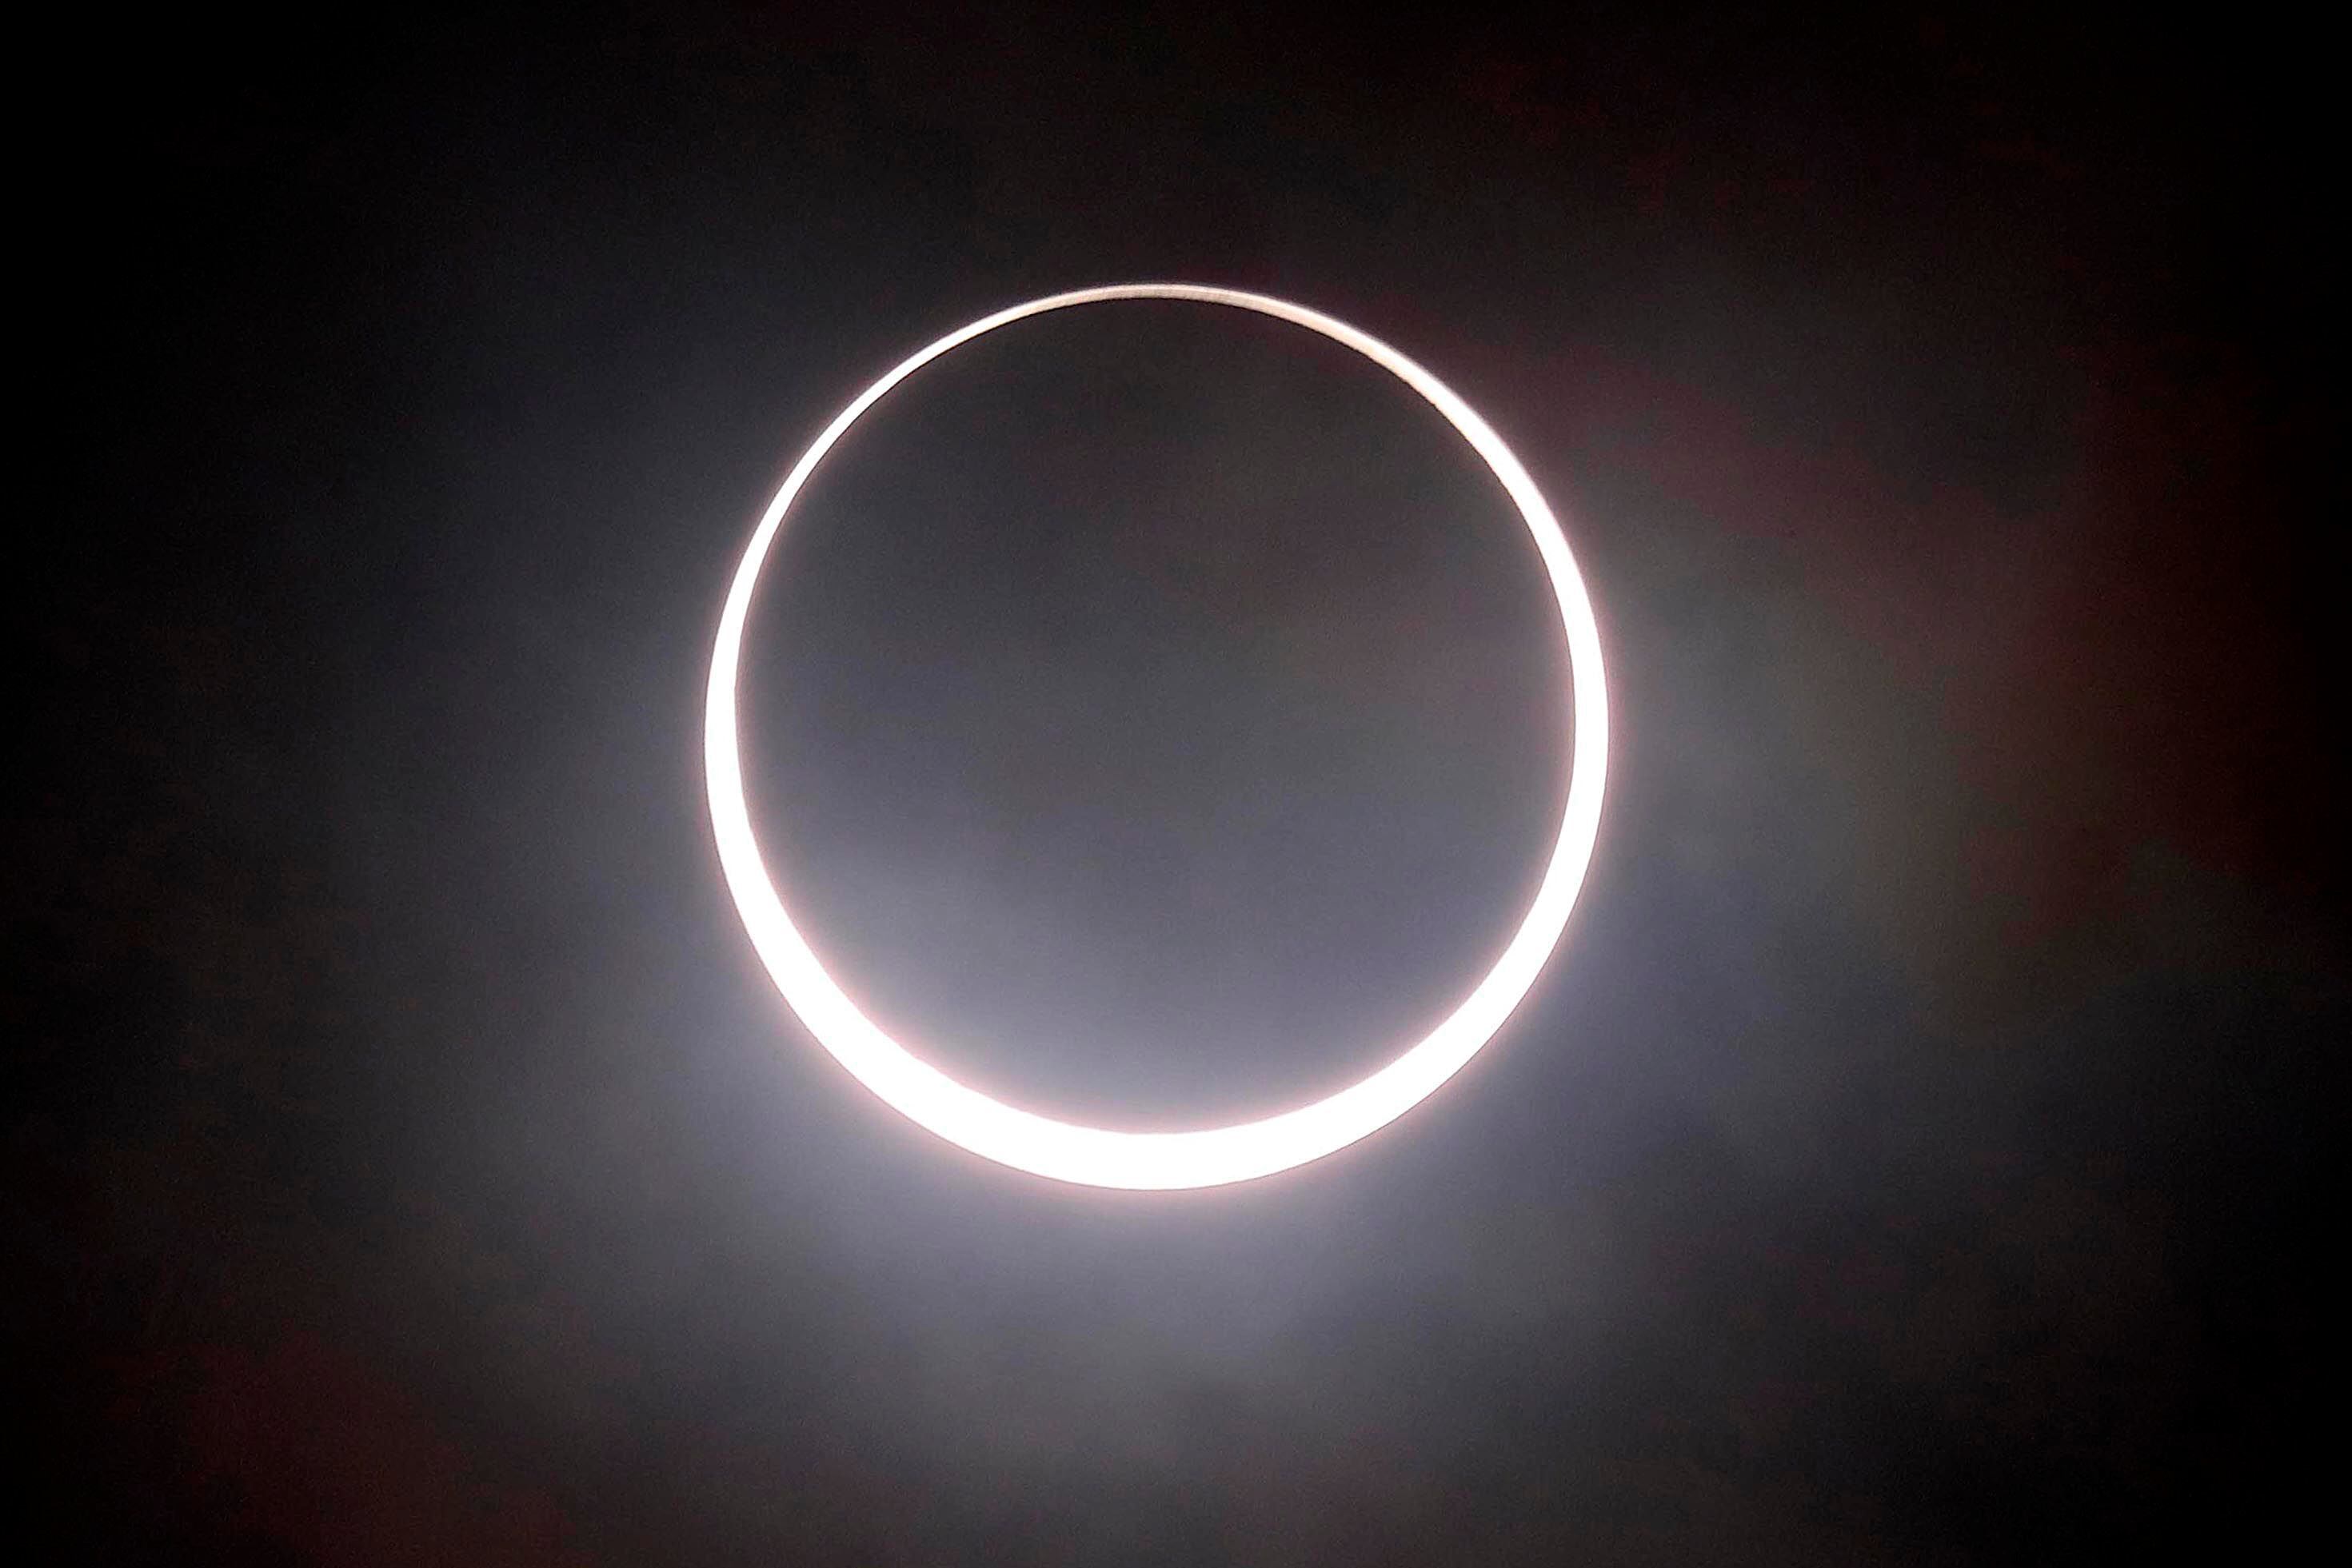 “Los eclipses tienen un poder especial” y hacen que la gente se incline ante la belleza del universo, dijo esta semana el jefe de la NASA, Bill Nelson. (Foto: Rafael Pacheco Granados).